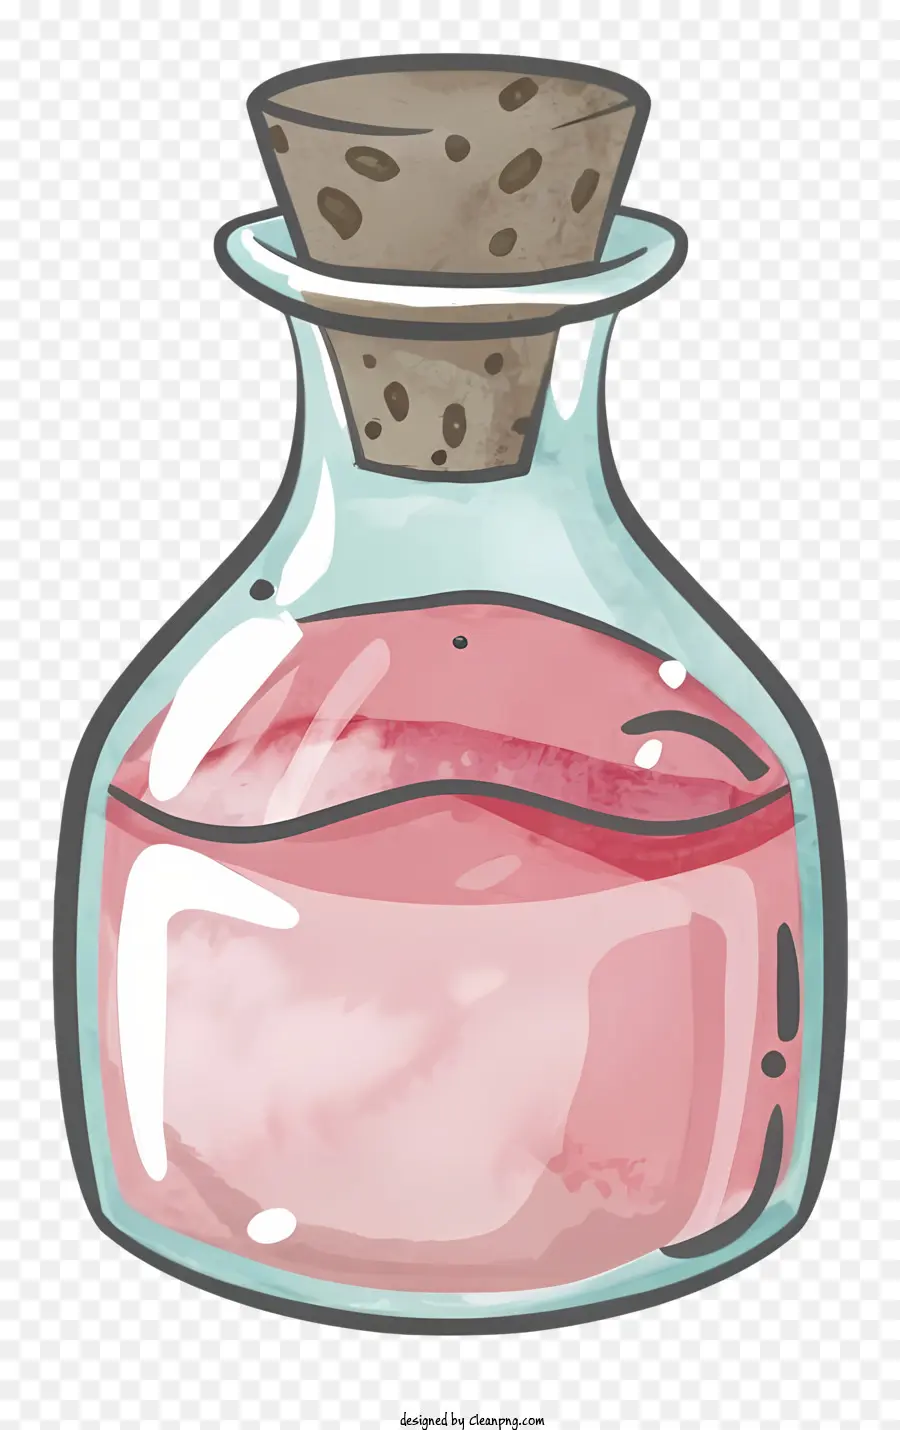 Cartoonglas Flasche Pink Flüssigkeit klarer Flasche mit Stopper - Klarglasflasche mit rosa Flüssigkeit im Inneren